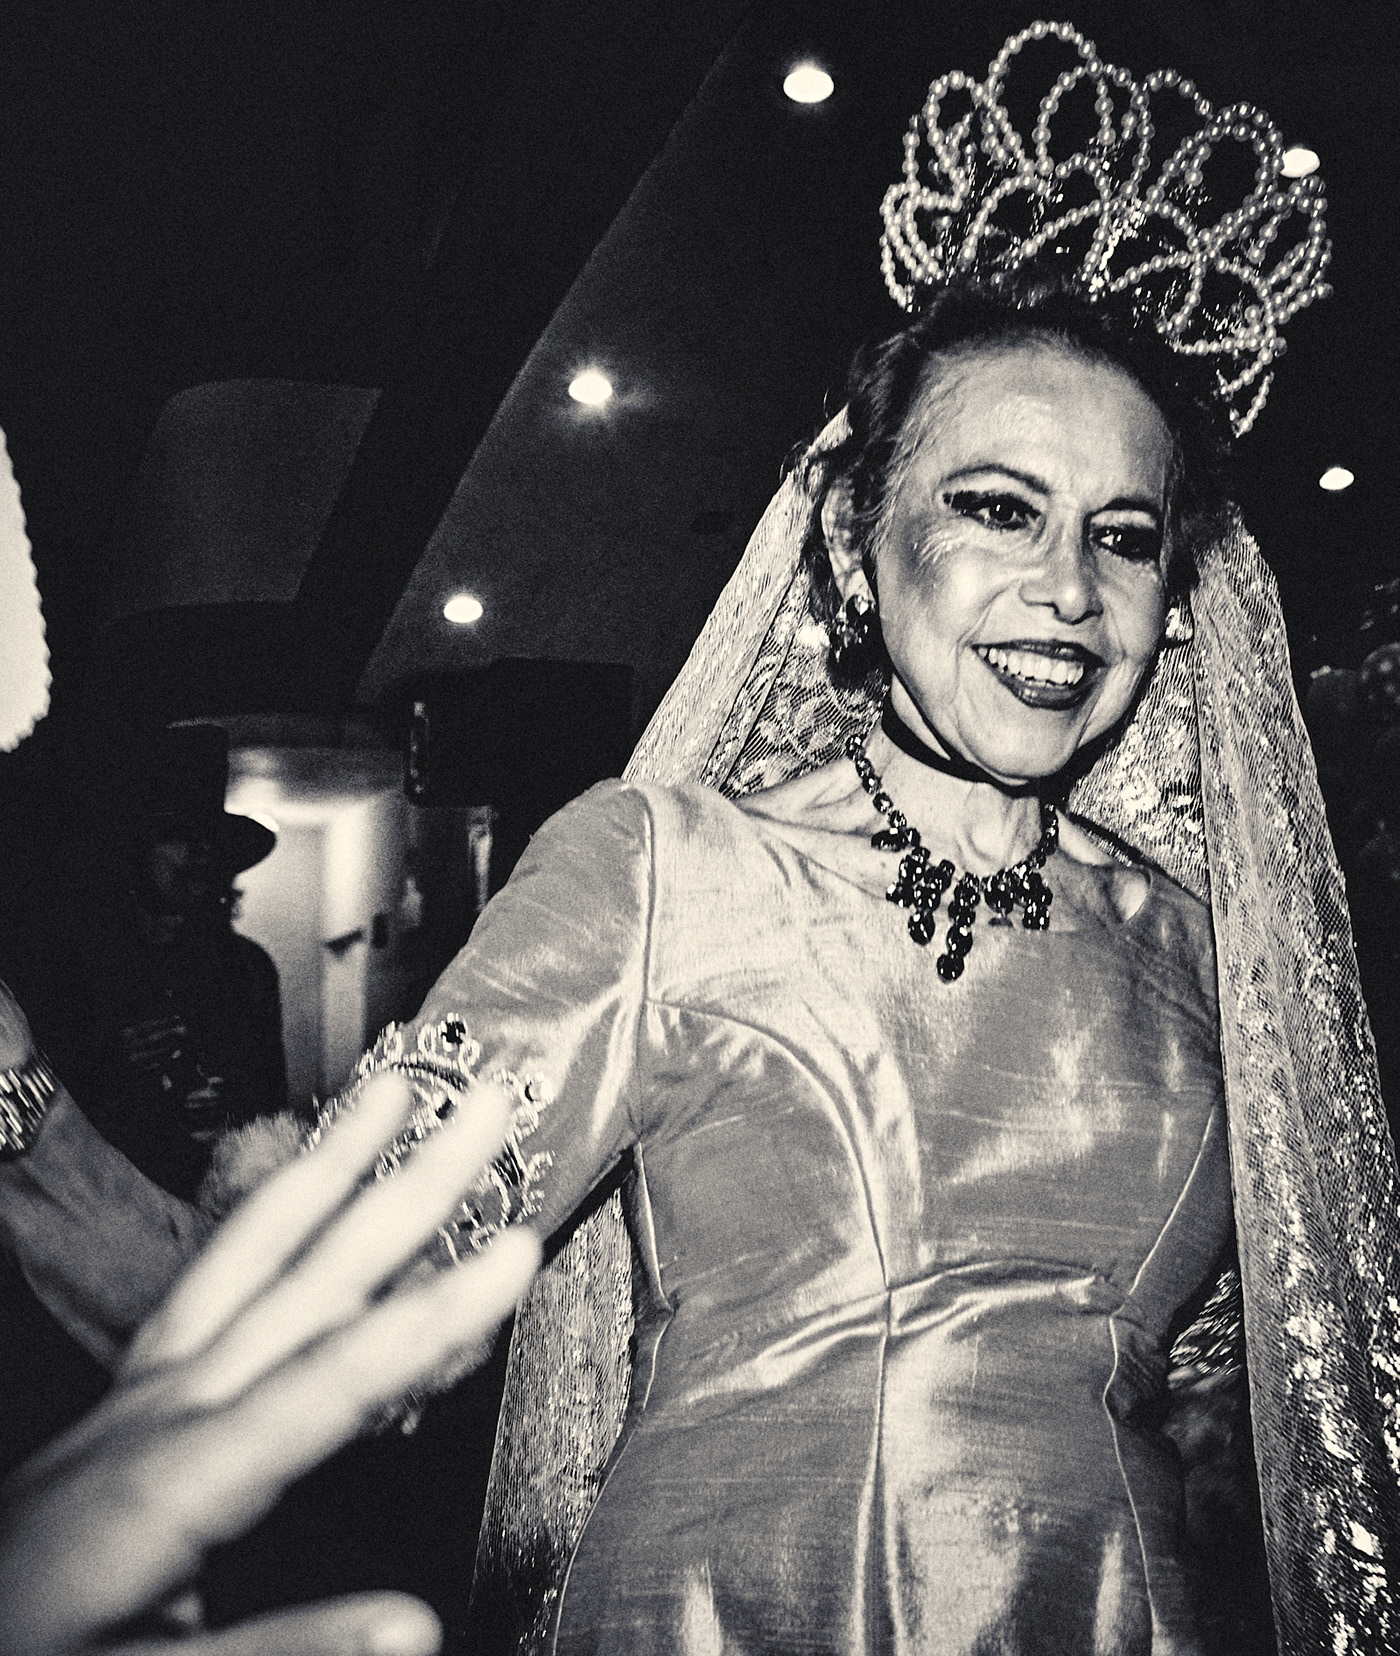 Carnival matt mawson mexico reportage people black and white monochrome